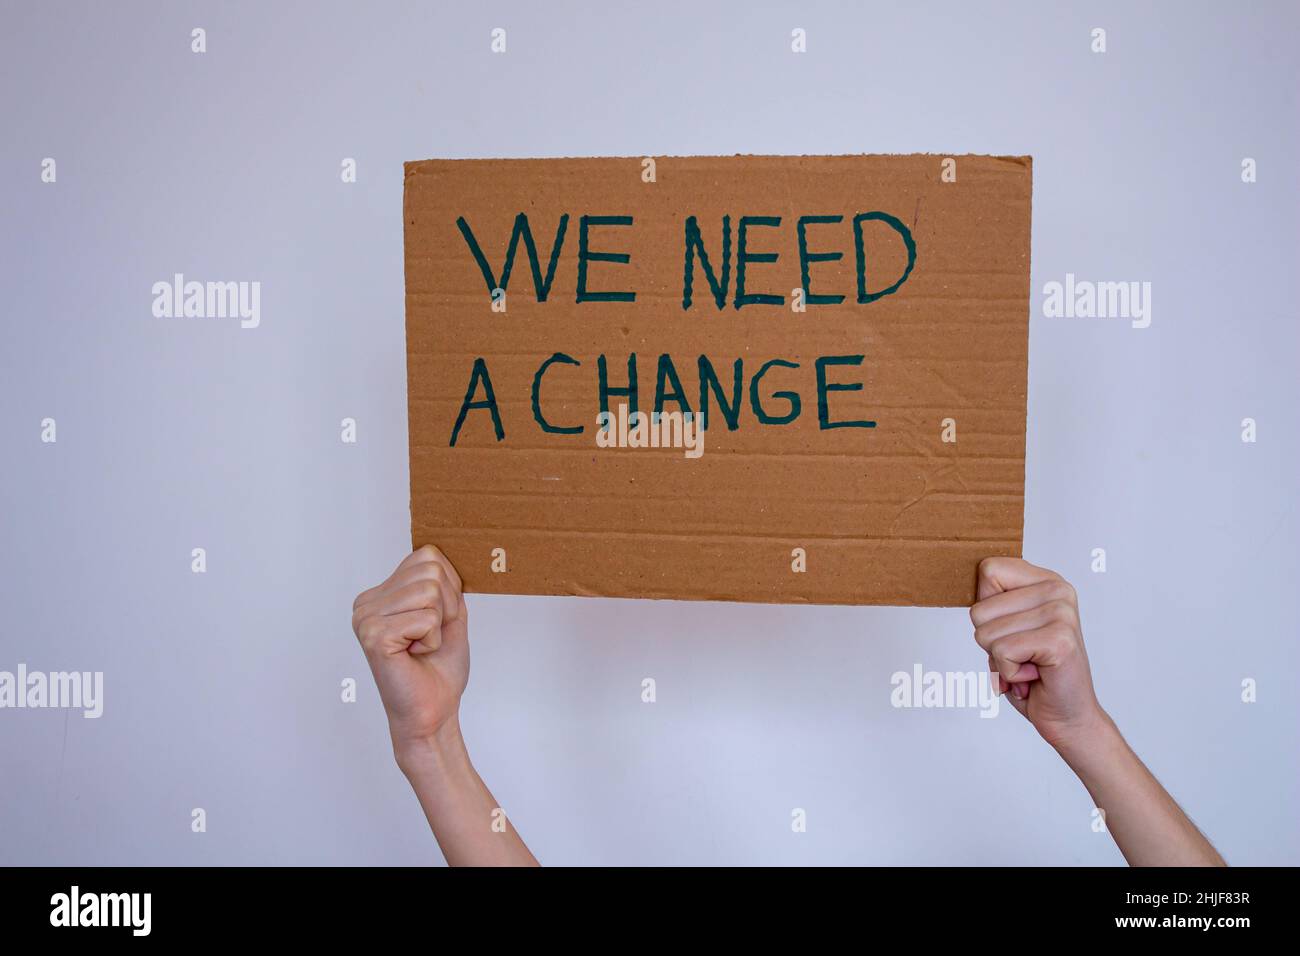 Handgehaltener Karton mit der Aufschrift „We need a change“ auf grauem Wandhintergrund. Sie kann gegen die globale Erwärmung oder Umweltverschmutzung protestieren. Stockfoto